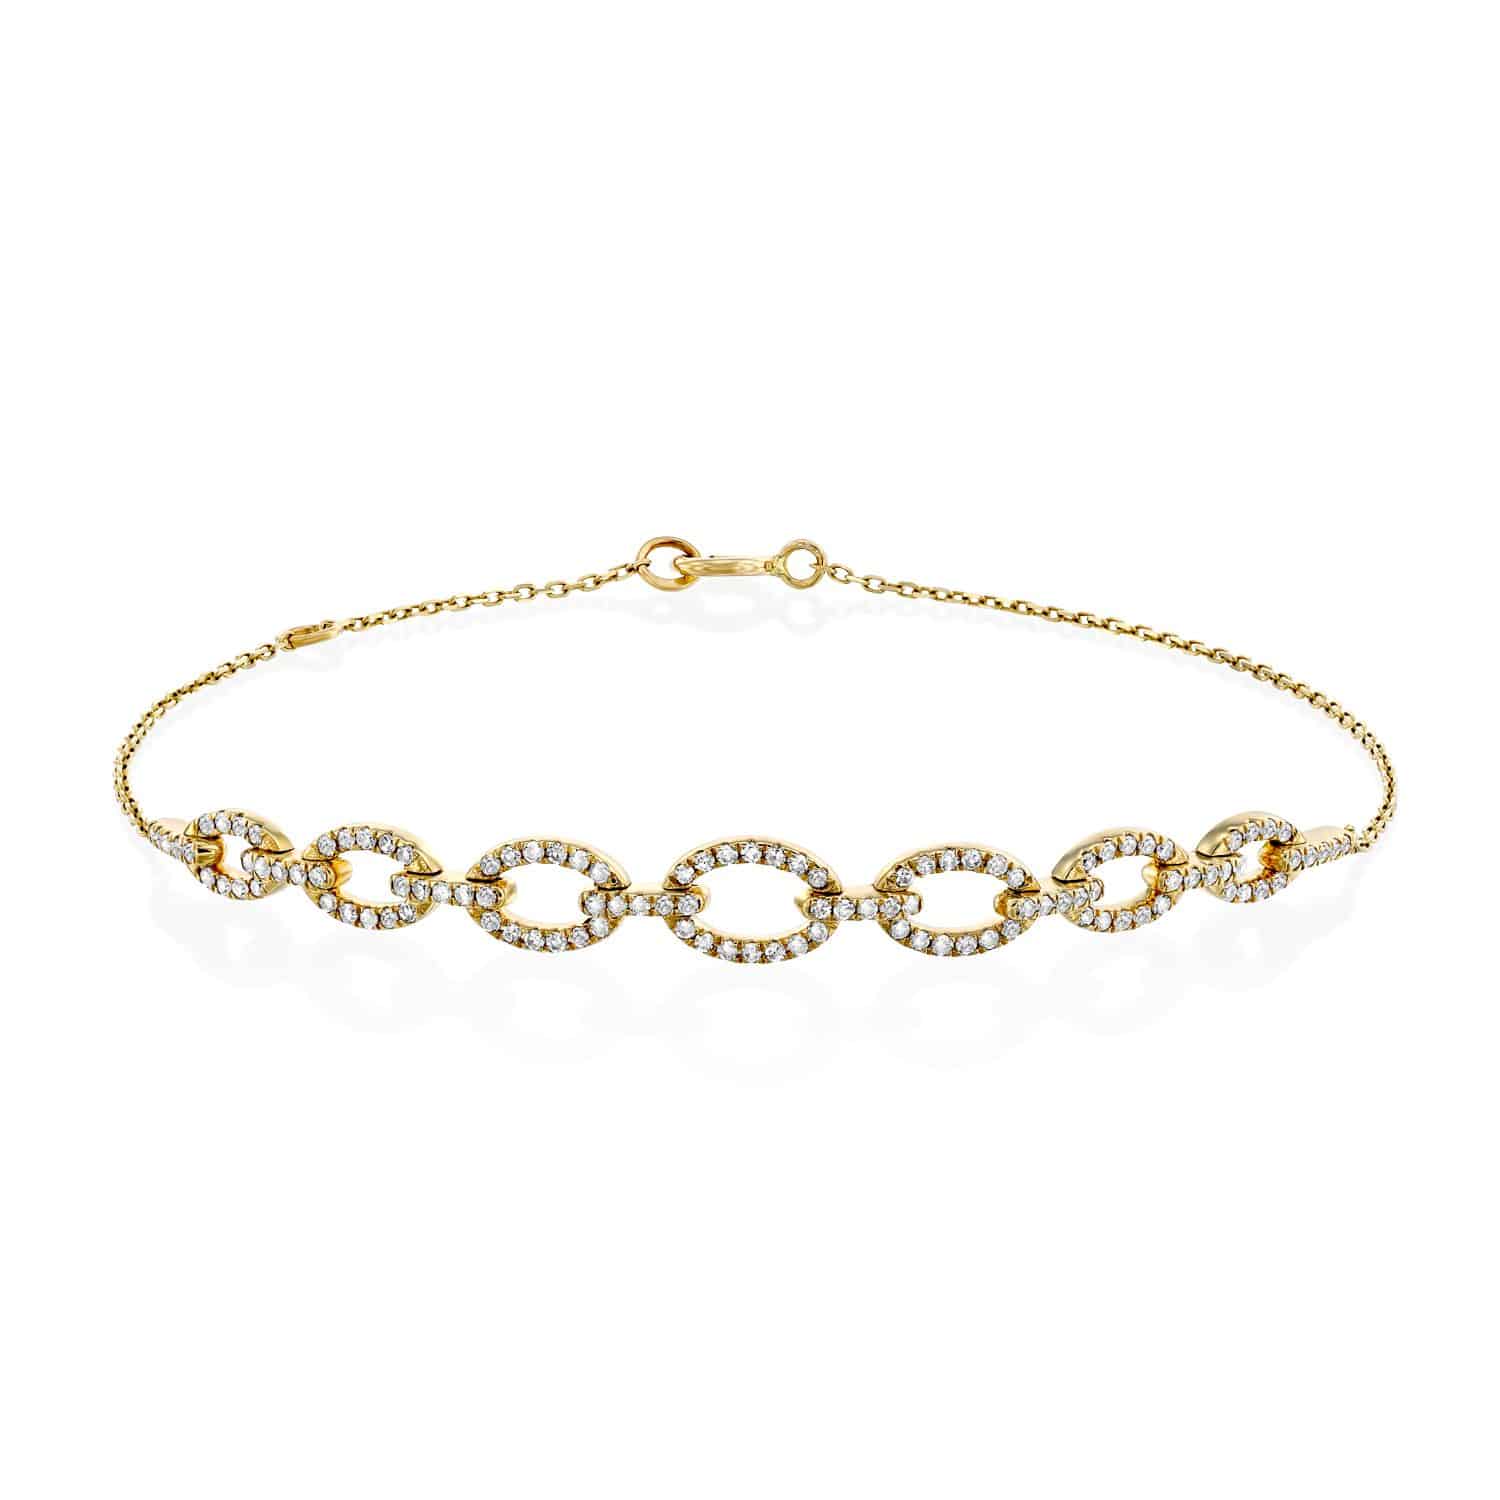 צמיד זהב עם חריטות אלמנטים באבני יהלום בעיצוב של Julie infinity link על רקע לבן.